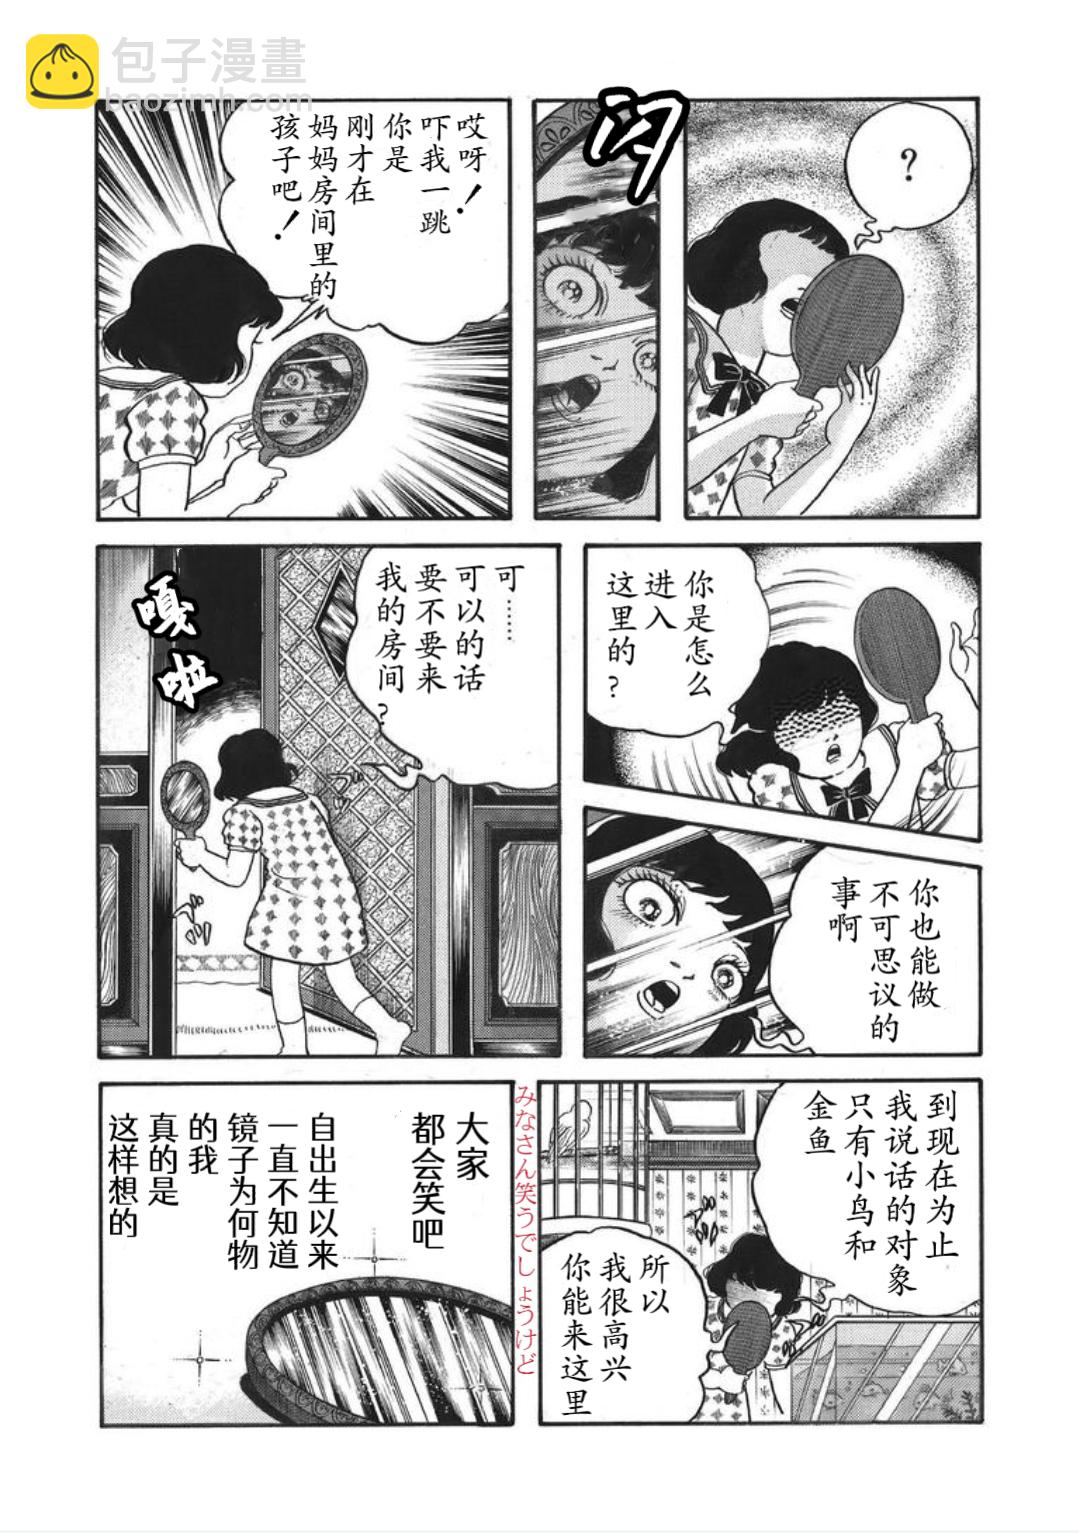 犬木加奈子的大人向恐怖童話 - 皇后的魔鏡 - 2